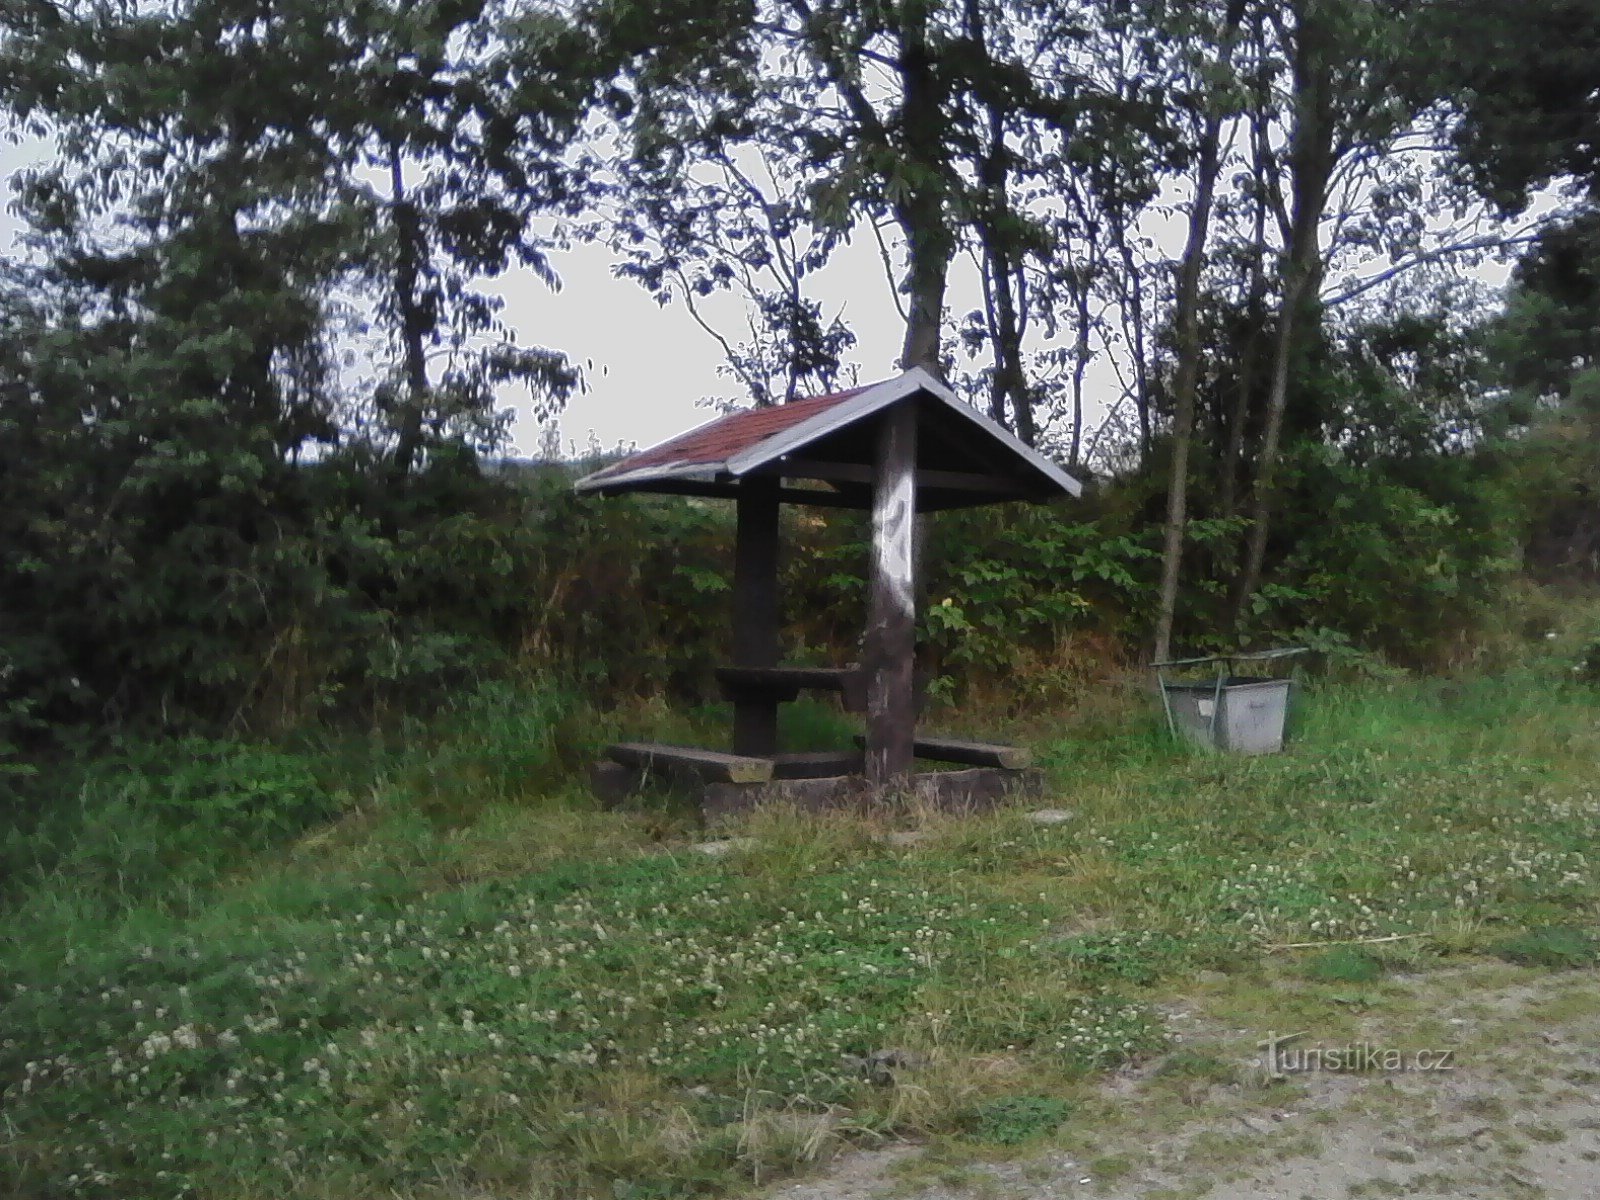 2. Shelter for turister på Lomko.